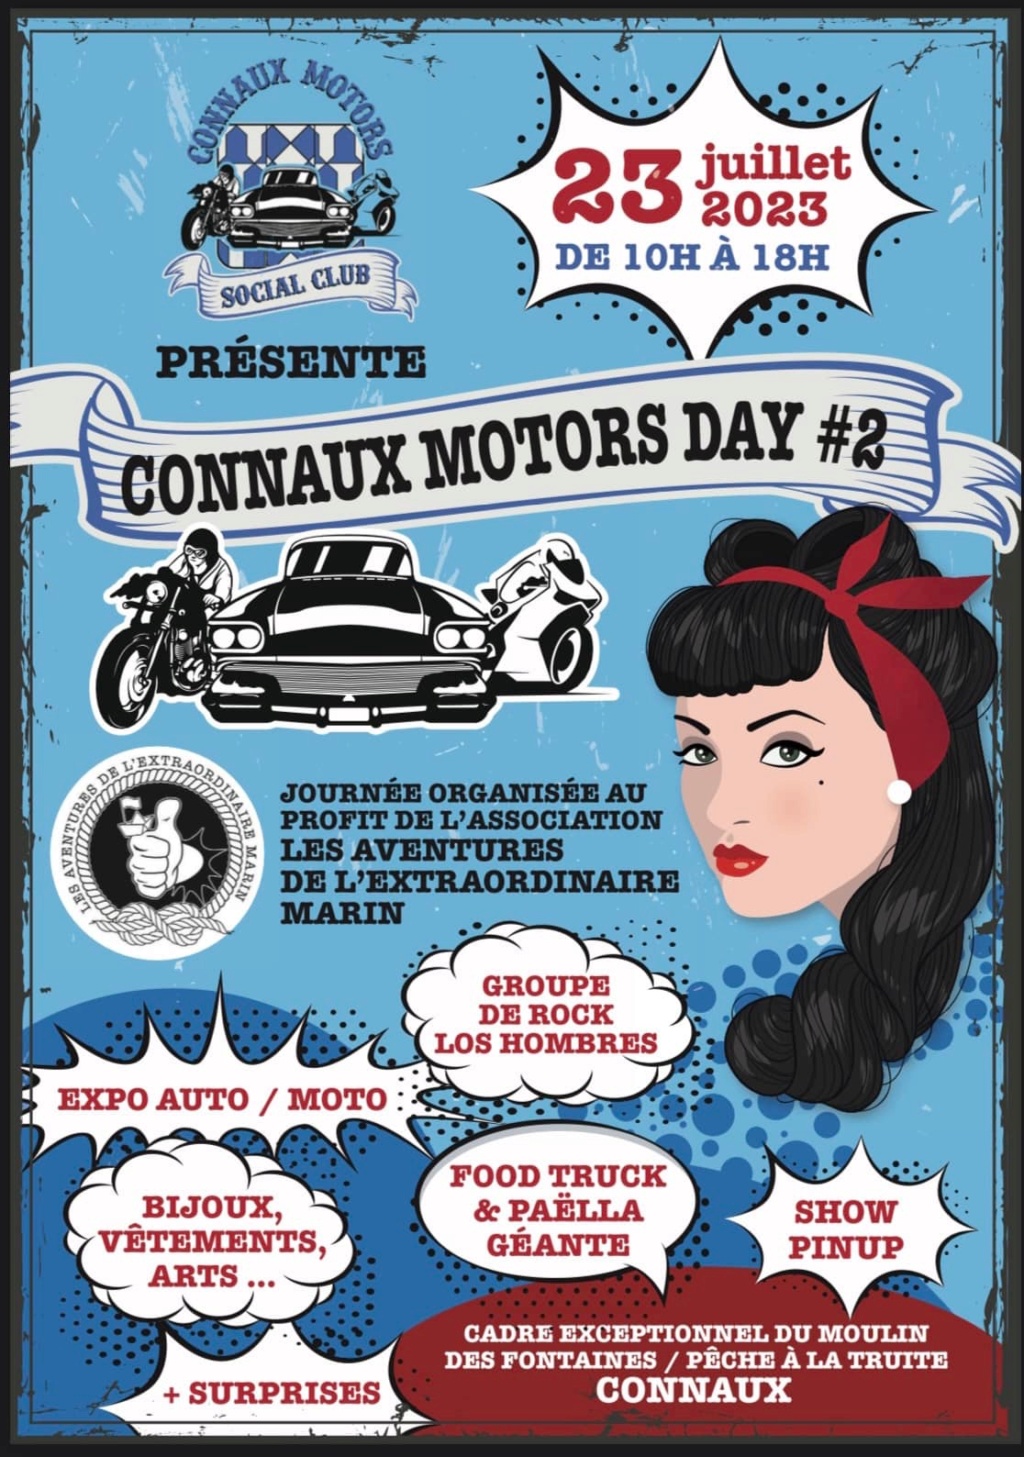 MANIFESTATION - Connaux Motors Day - Dimanche 23 Juillet 2023 - CONNAUX -  64b56810